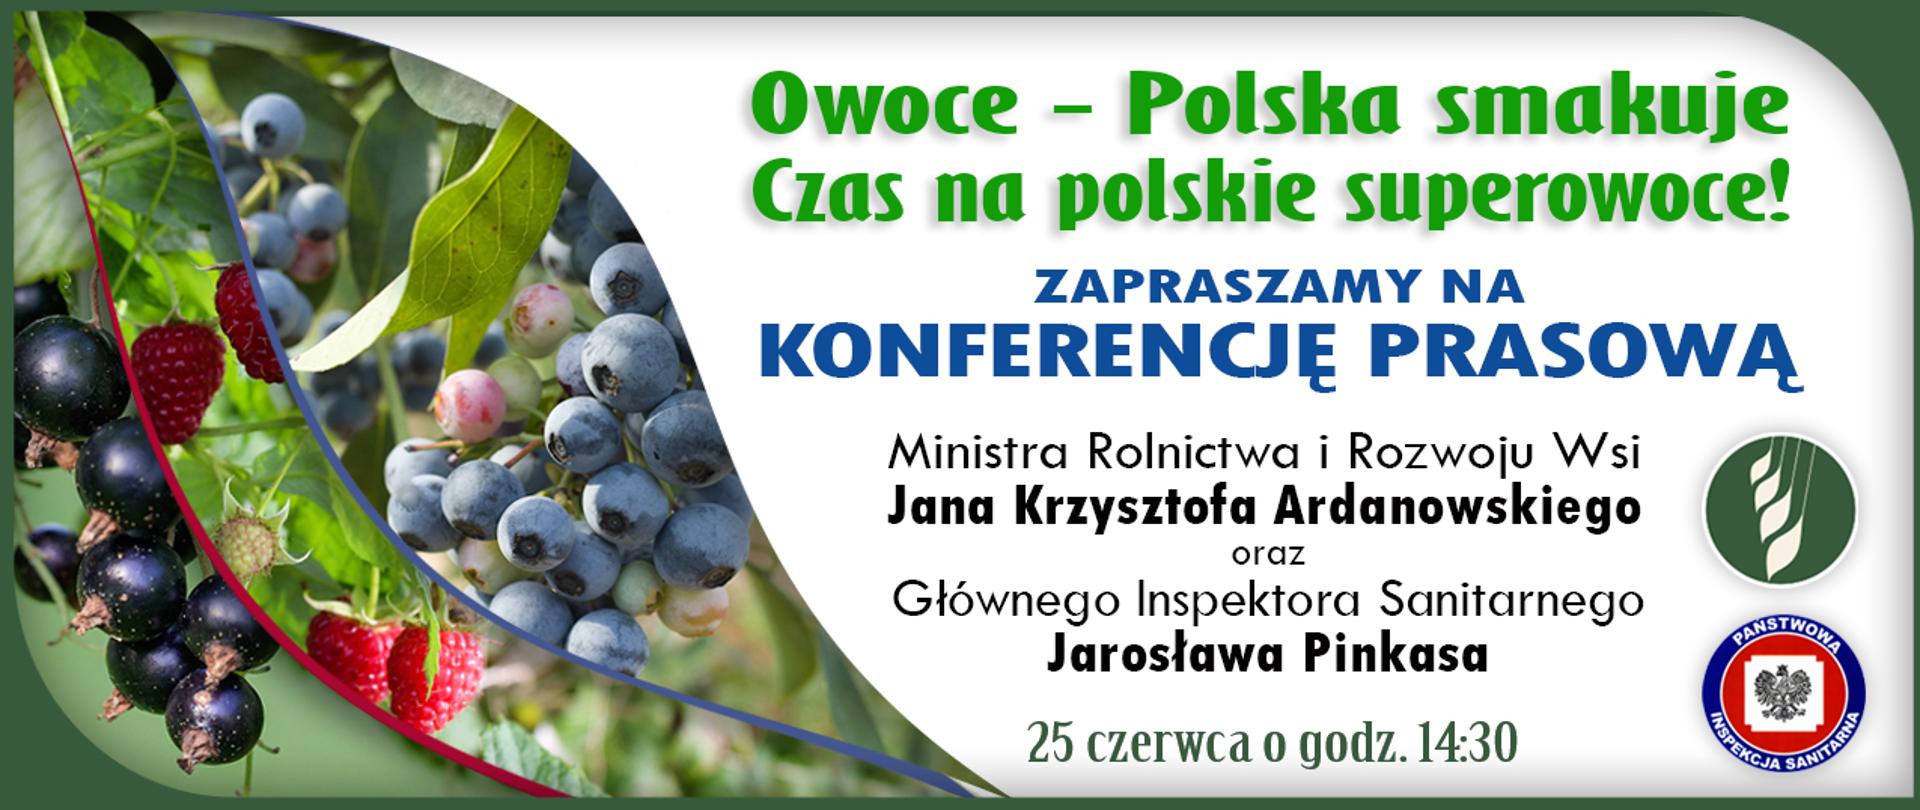 Zaproszenie Konferencja prasowa Owoce-Polska smakuje